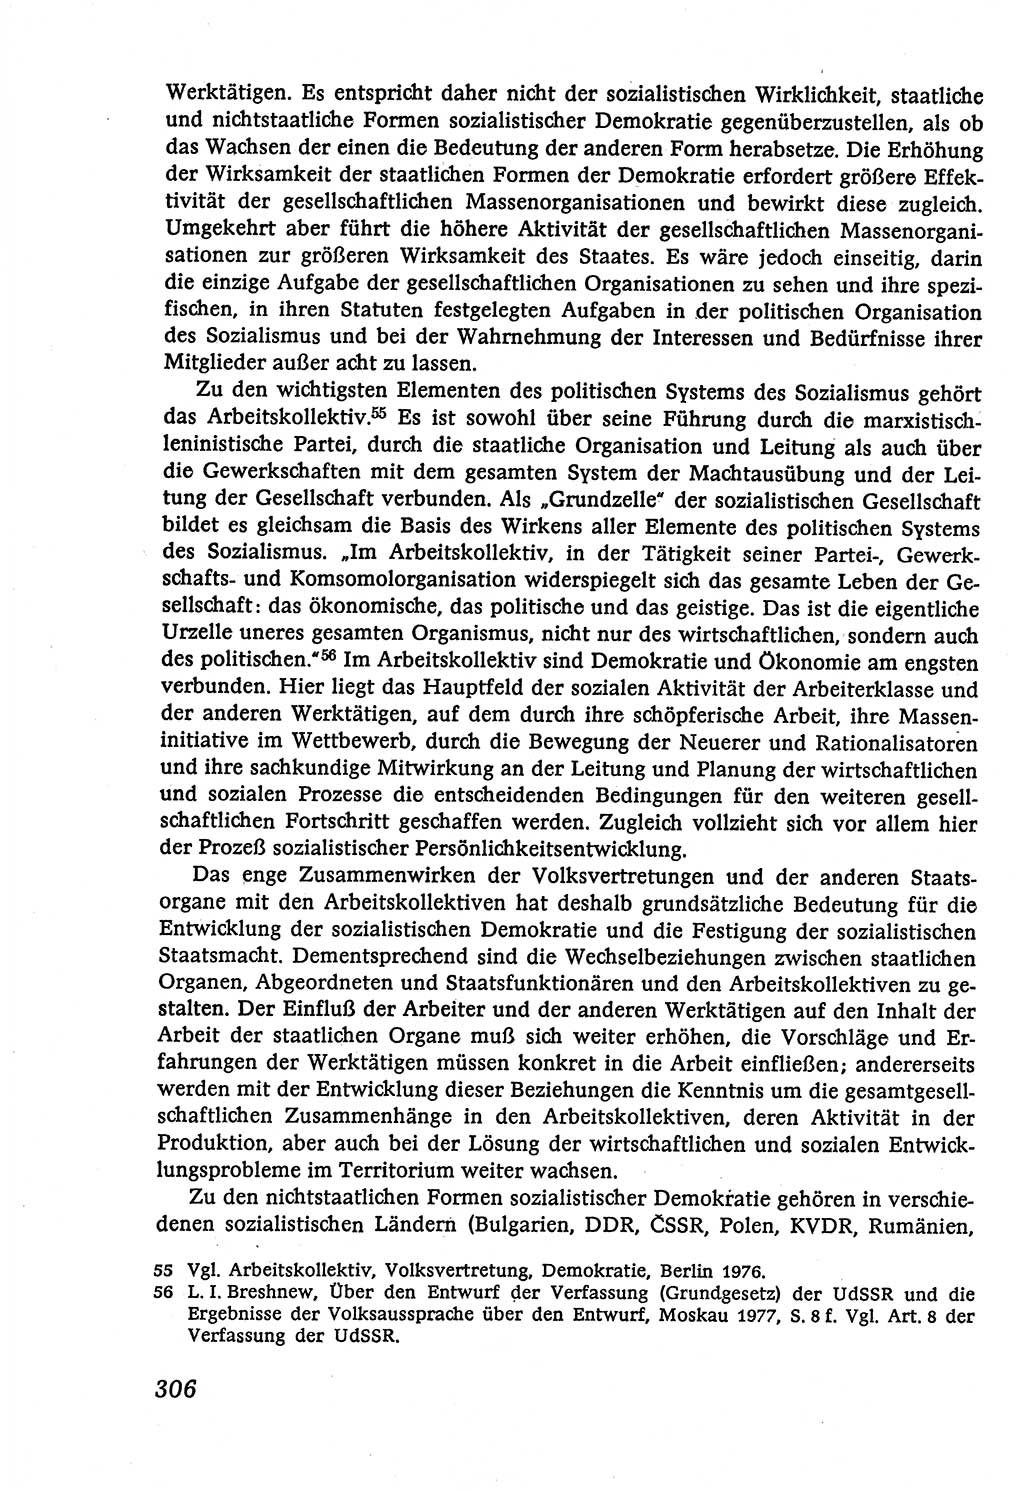 Marxistisch-leninistische (ML) Staats- und Rechtstheorie [Deutsche Demokratische Republik (DDR)], Lehrbuch 1980, Seite 306 (ML St.-R.-Th. DDR Lb. 1980, S. 306)